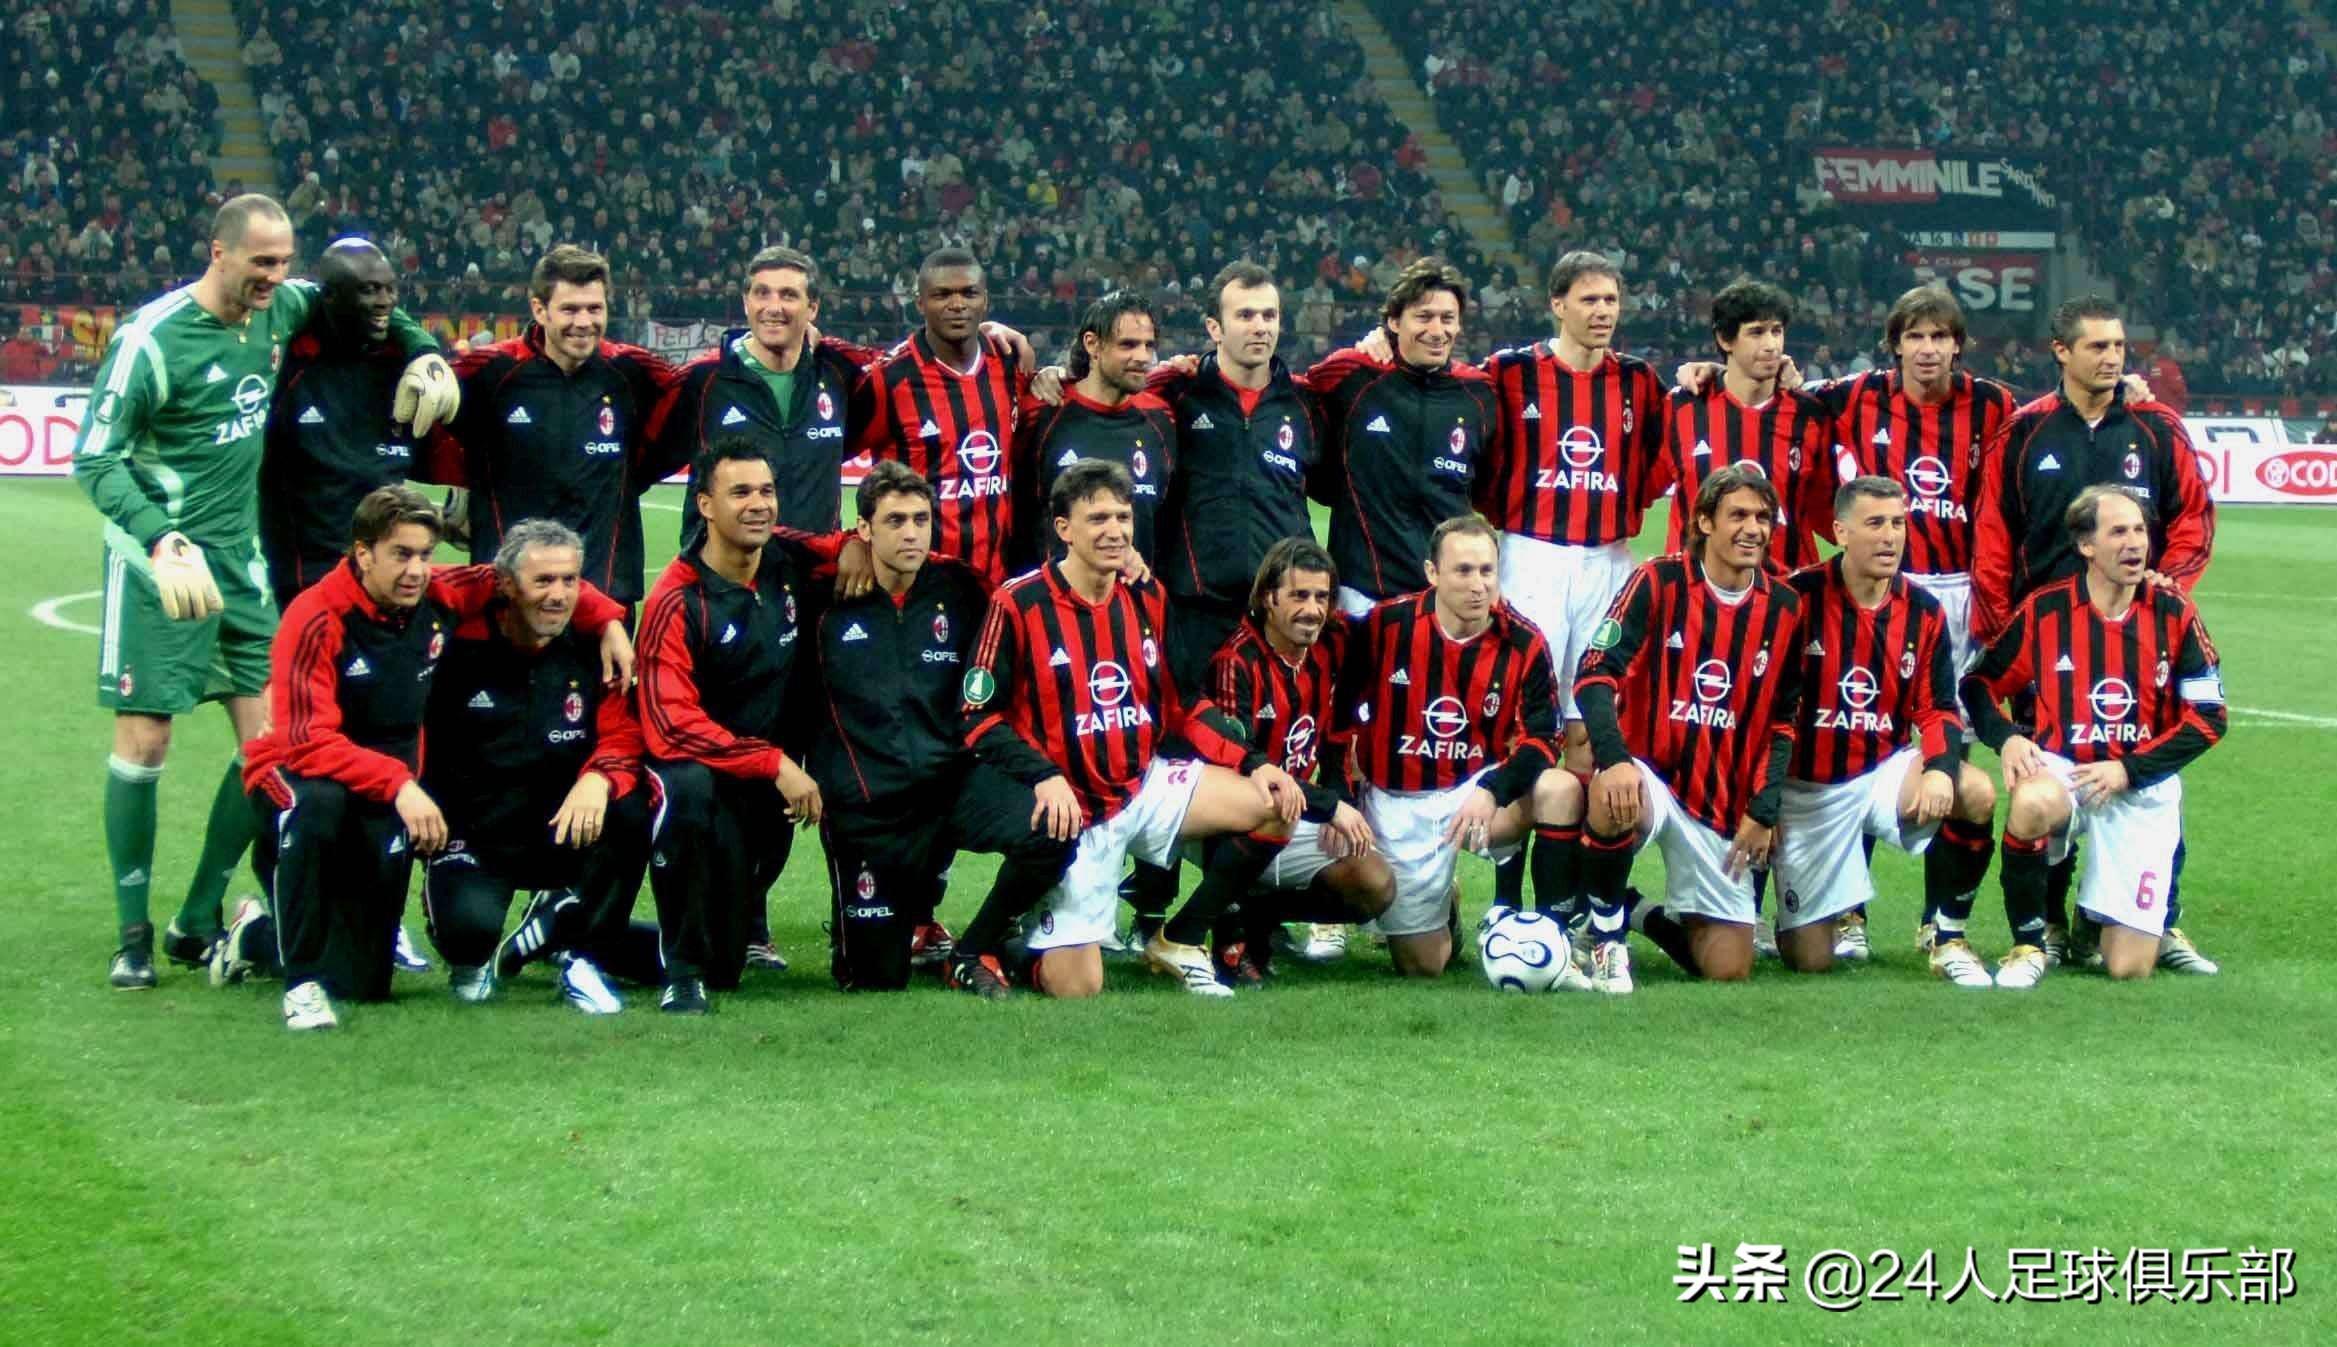 2007年欧冠决赛下半场 2007年AC米兰的欧冠冠军之路(6)